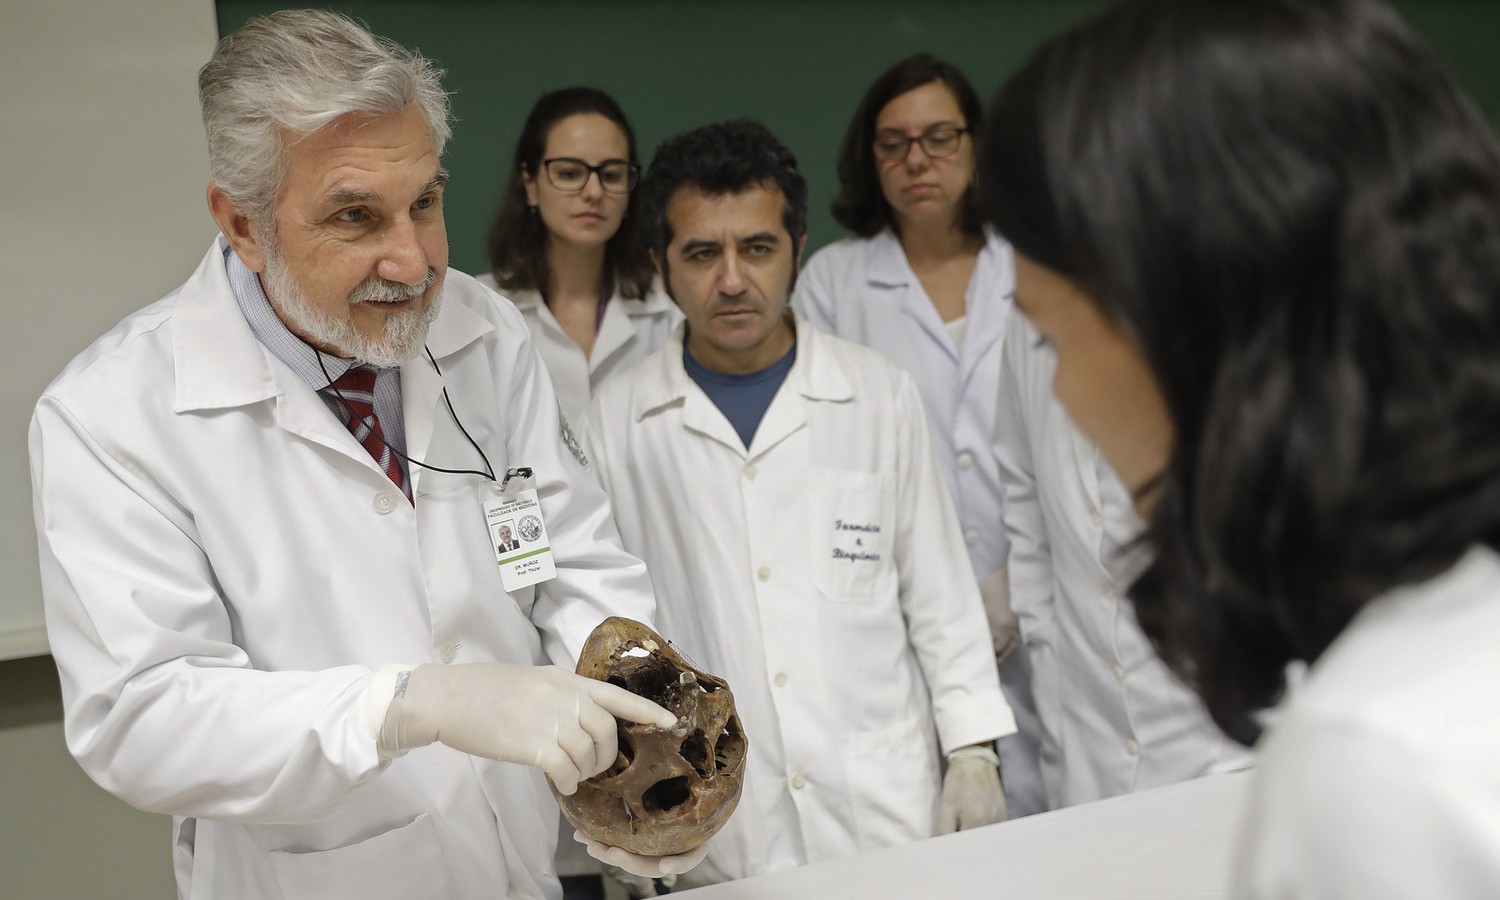 Медицинский университет Сан-Паулу получил для изучения скелет нацистского Ангела Смерти